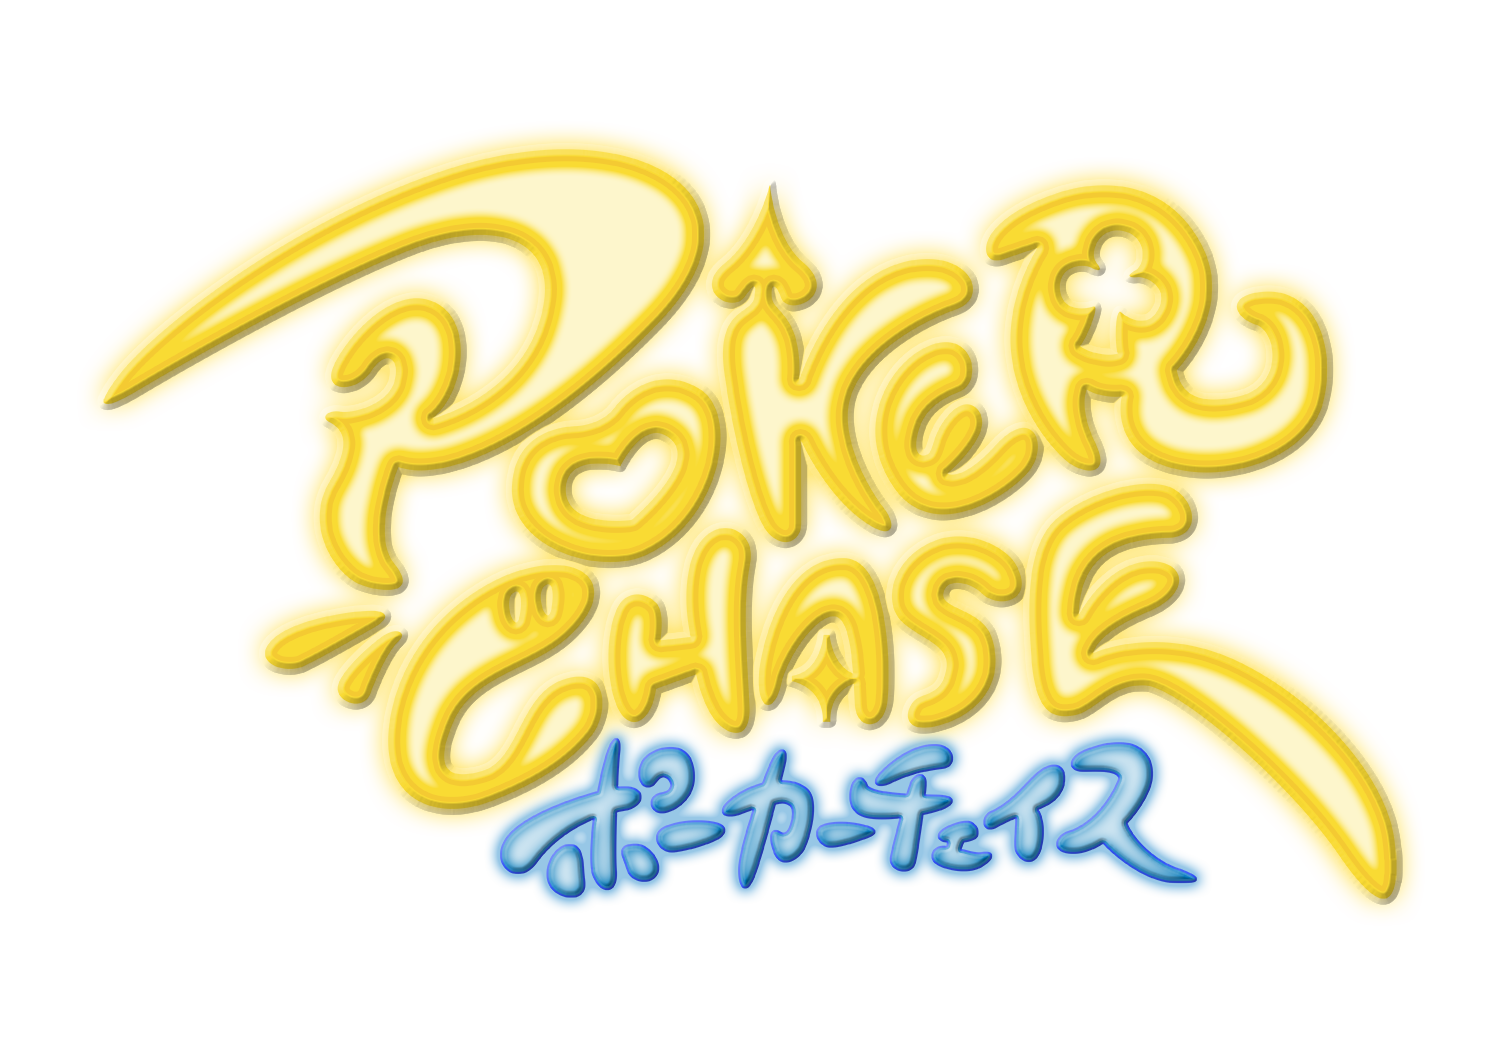 ポカチェ配信者応援キャンペーンを開催 ポーカーチェイス Poker Chase